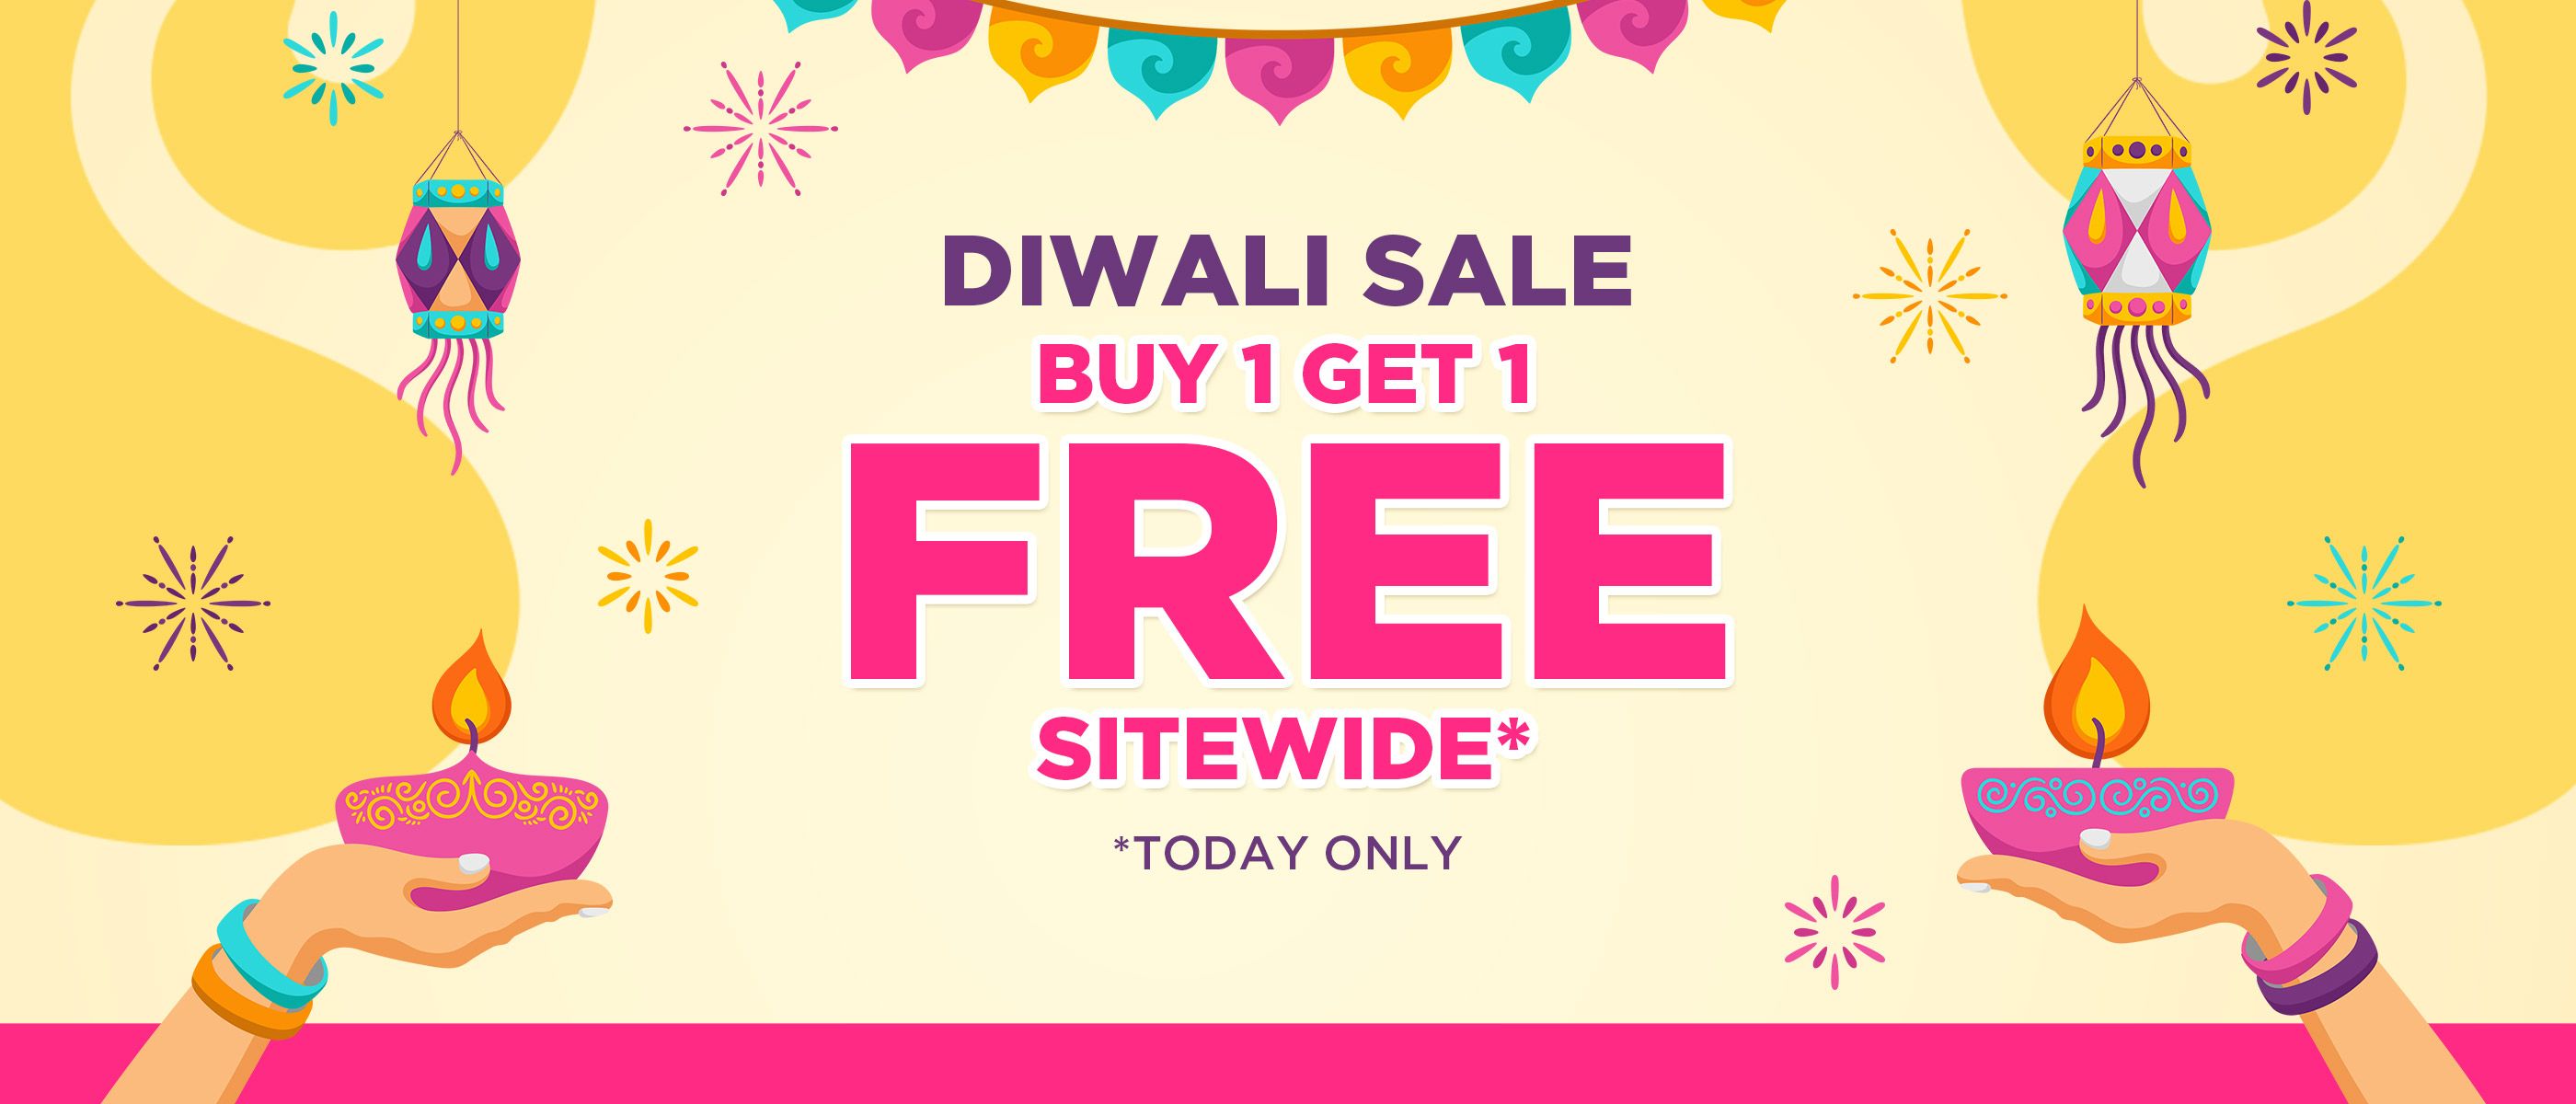 Buy 1 Get 1 Free Sitewide Diwali